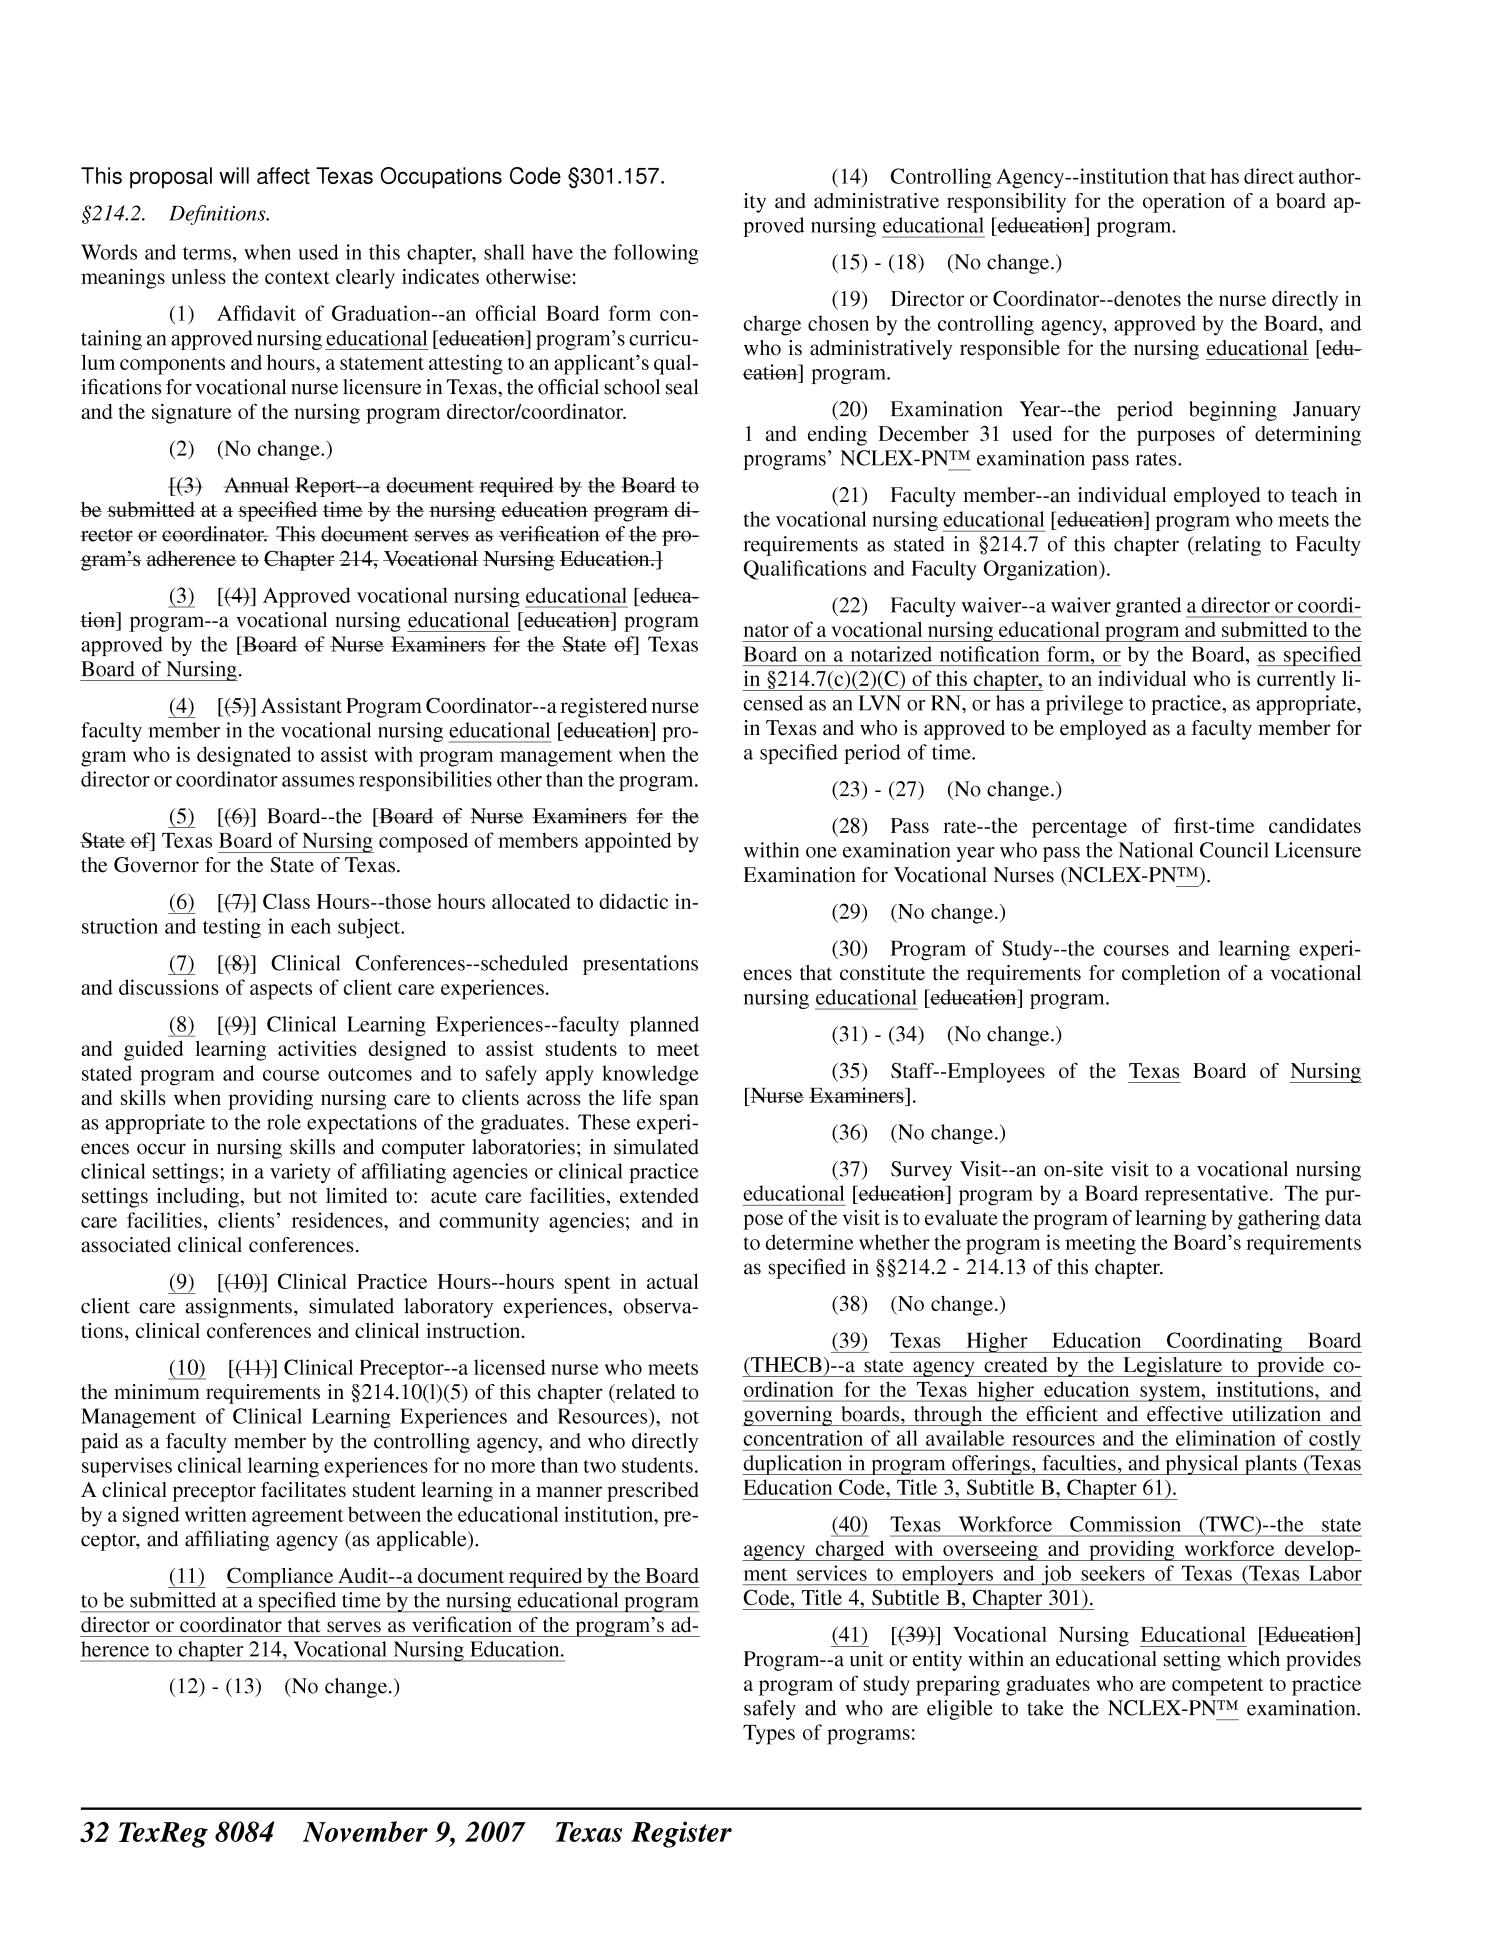 Texas Register, Volume 32, Number 45, Pages 8061-8222, November 9, 2007
                                                
                                                    8084
                                                